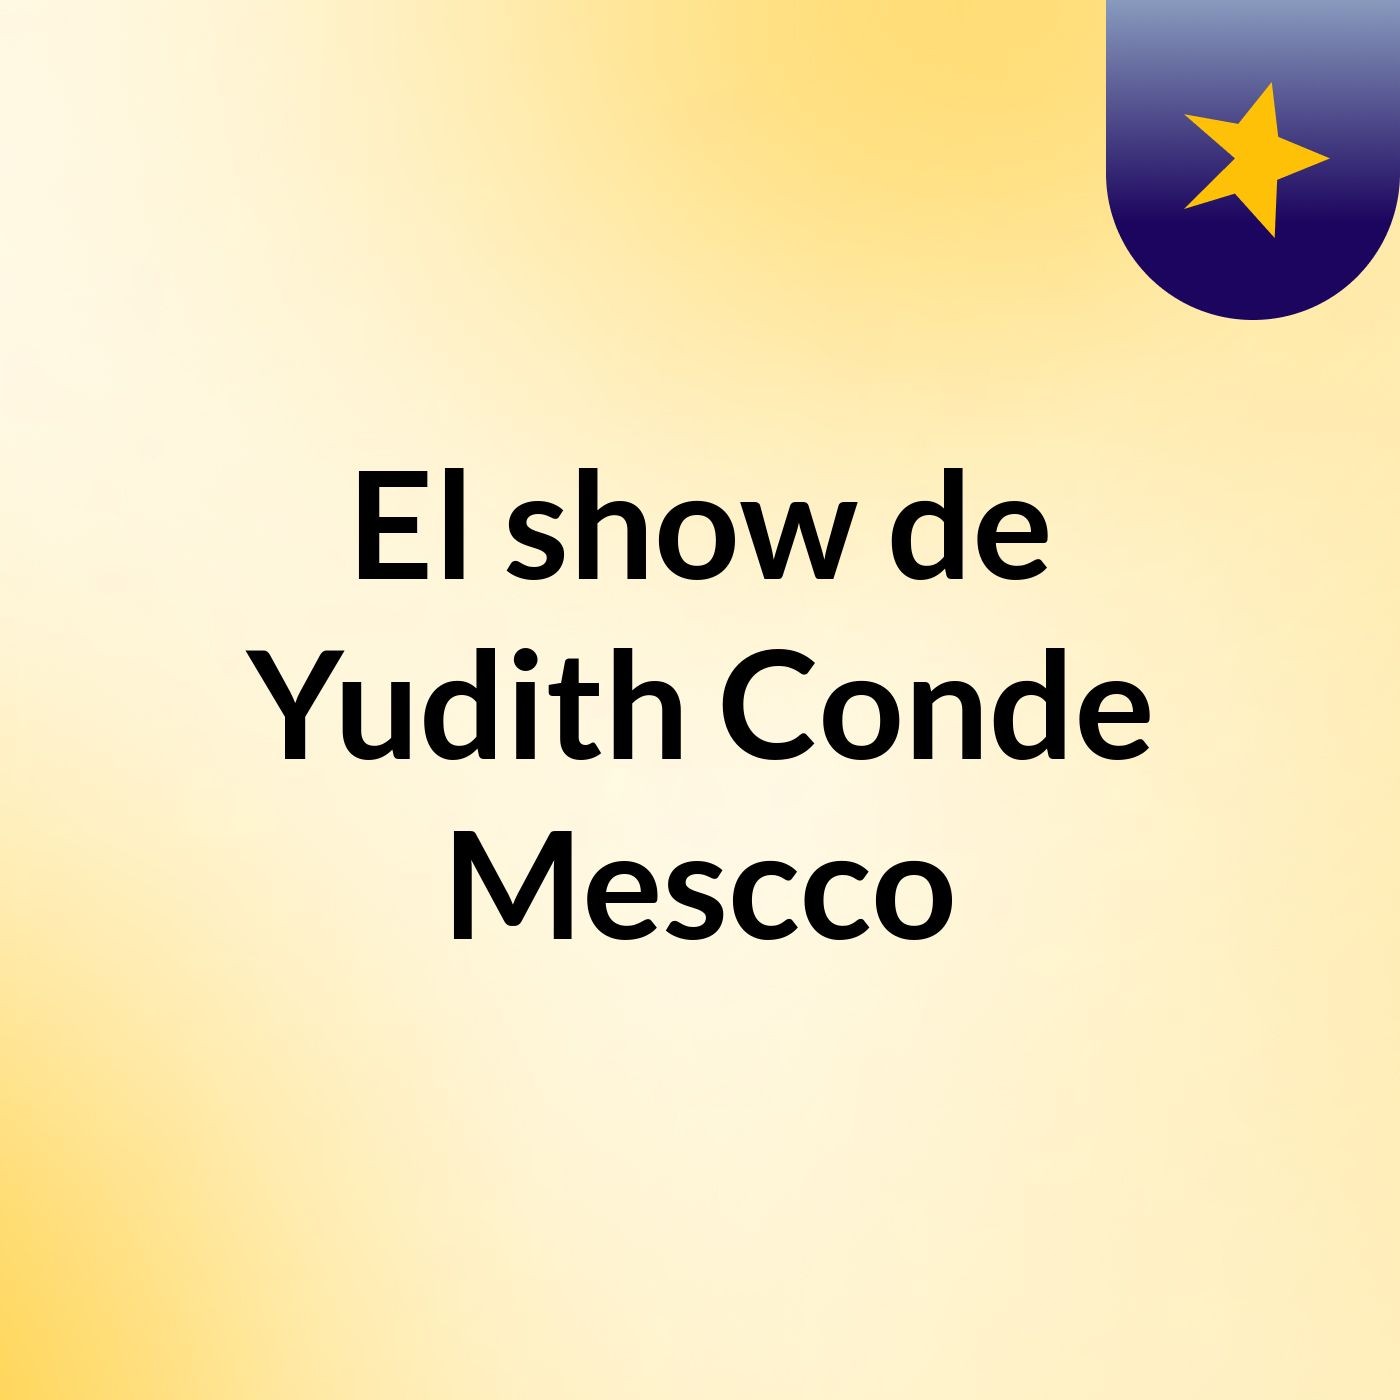 El show de Yudith Conde Mescco